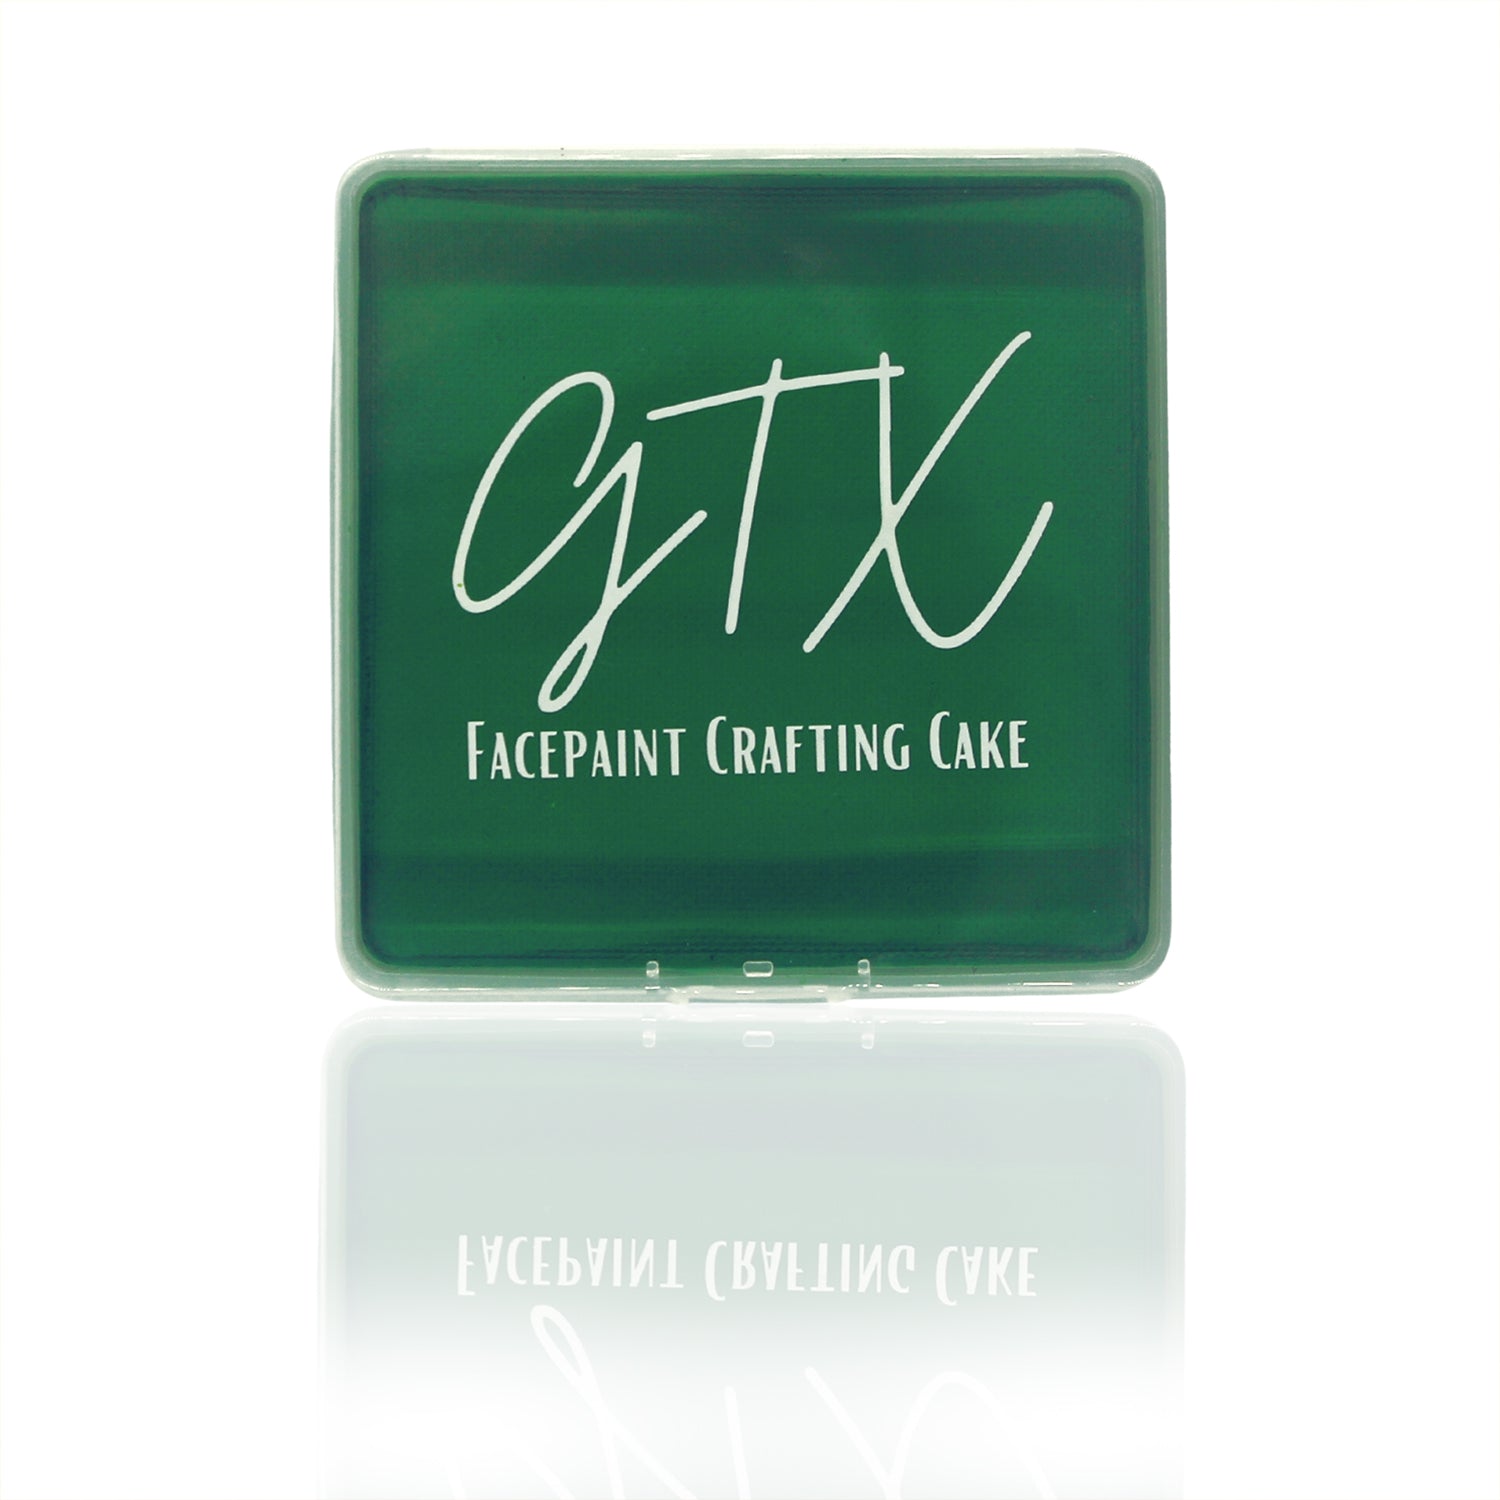 GTX Facepaint - Deep Forest Green (120 gm)